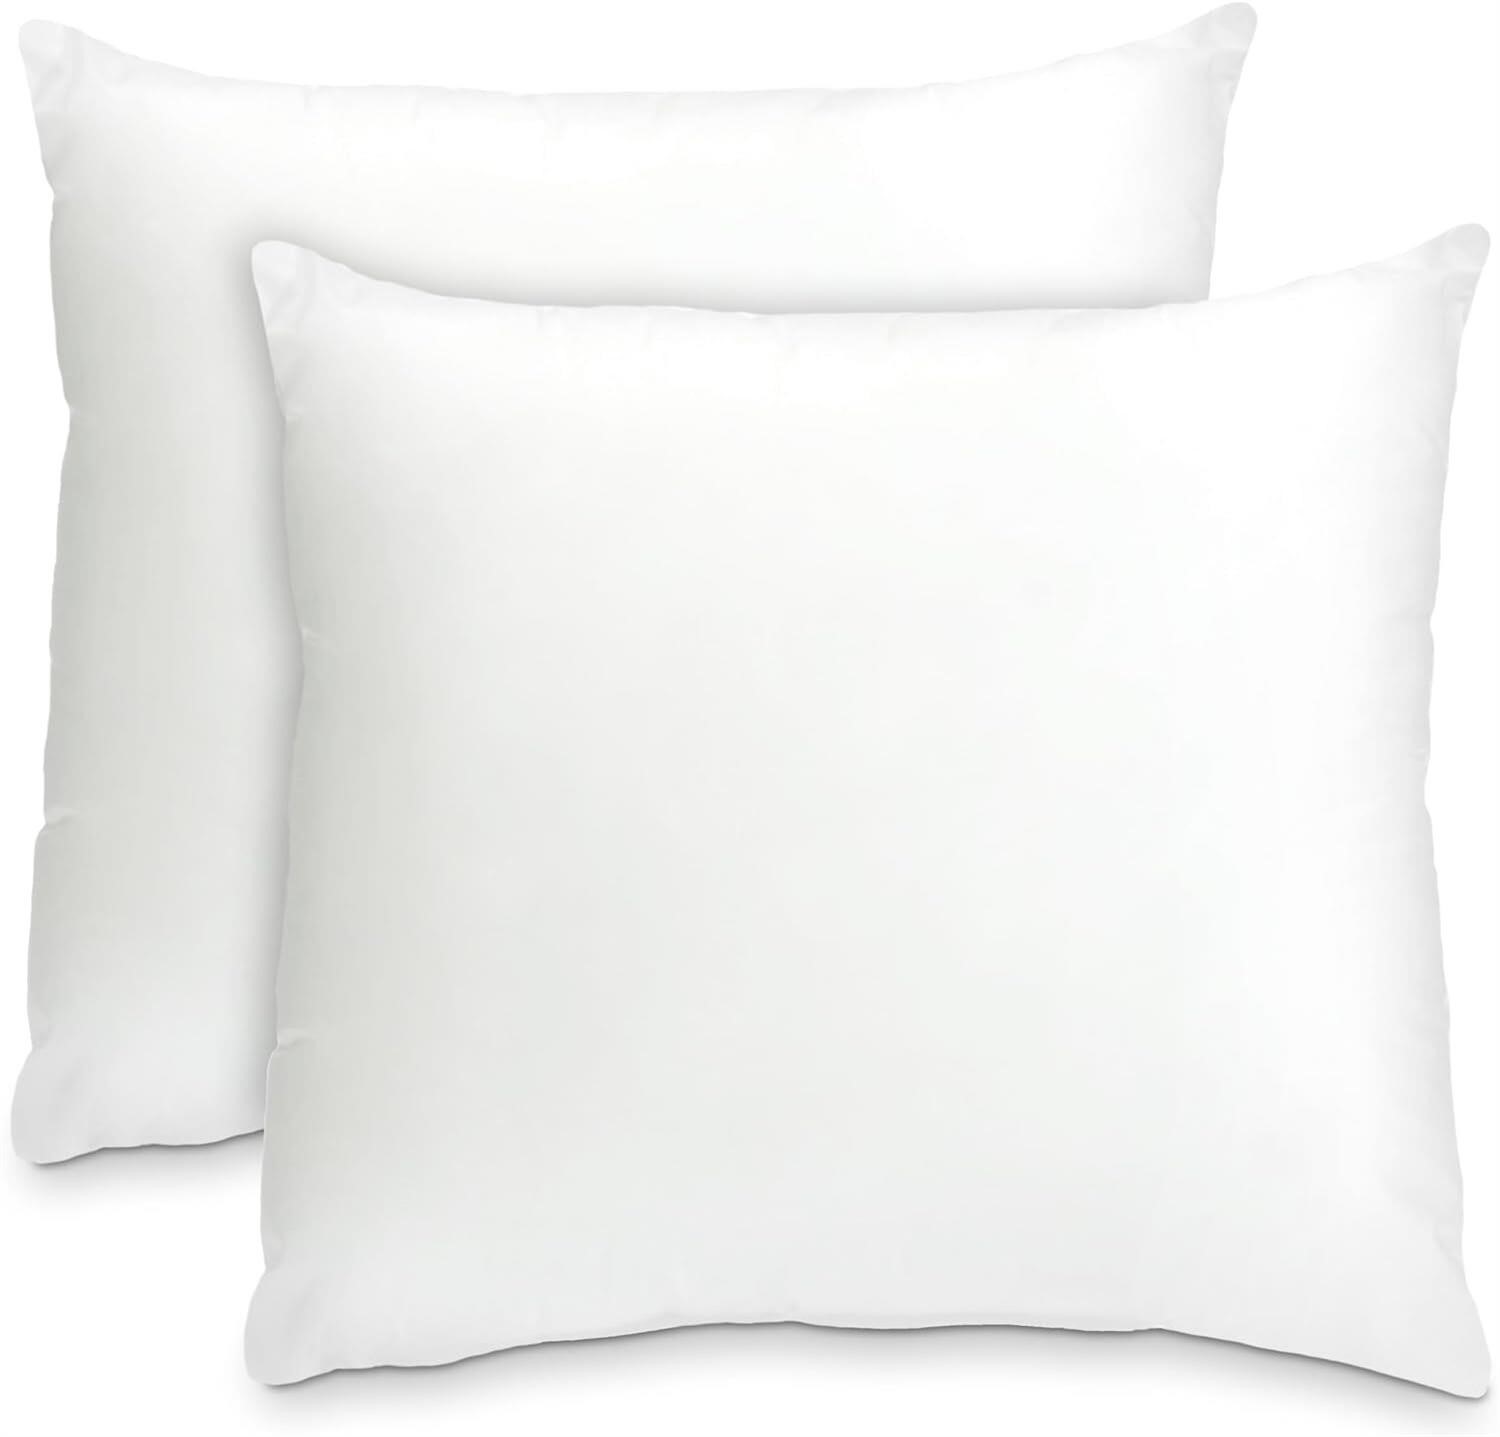 Foamily Throw Pillows Insert Set of 2-18 x 18